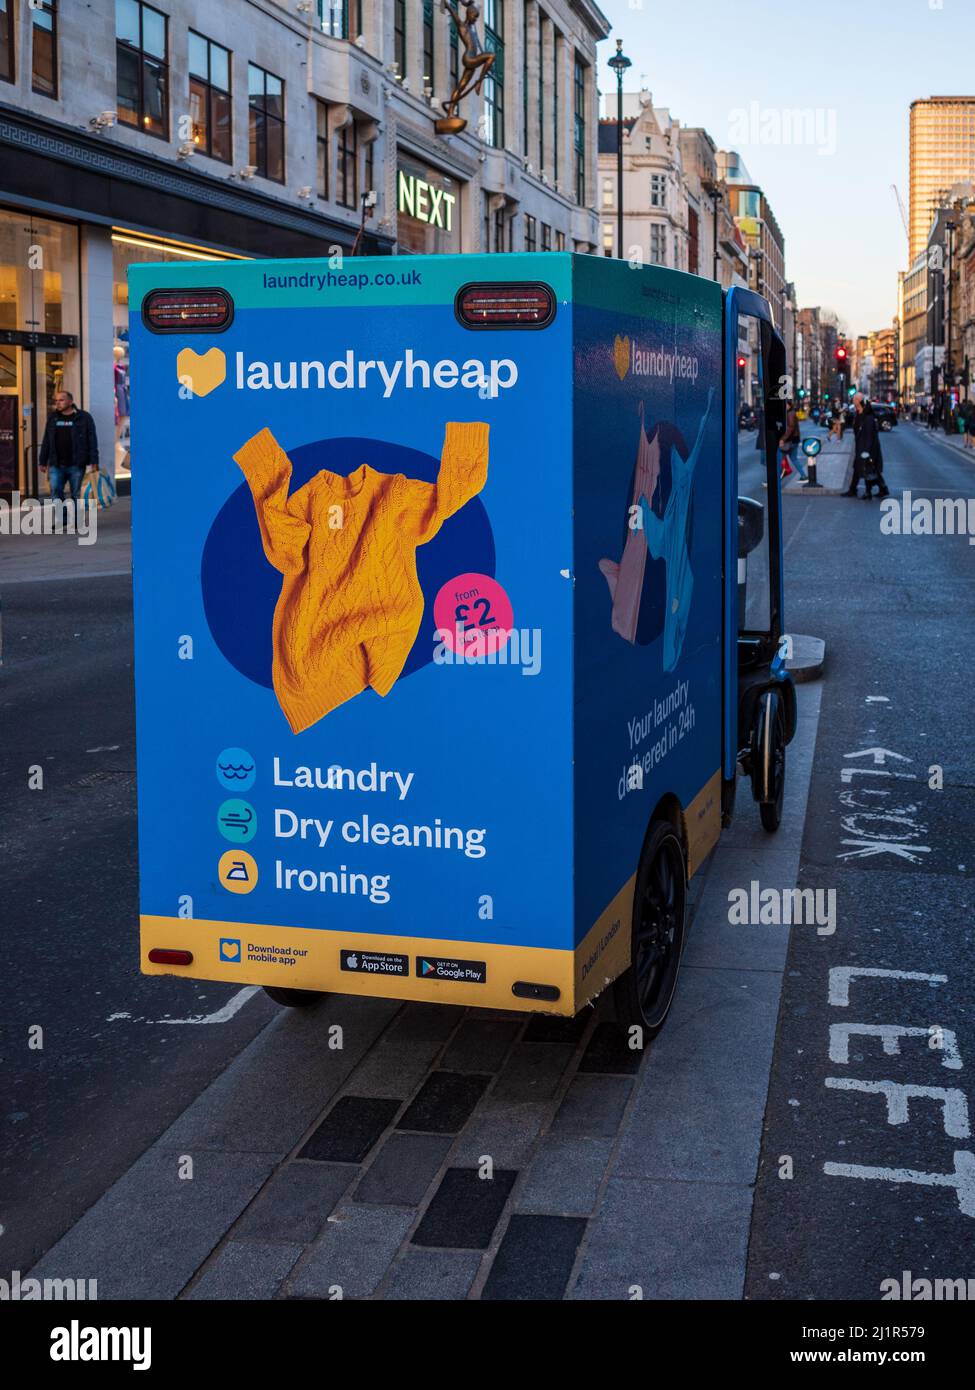 LaundryHeap eco friendly pulizia servizio di consegna lavanderia a Londra. Fondata nel 2014, fornisce un servizio online di ritiro e consegna lavanderia. Foto Stock